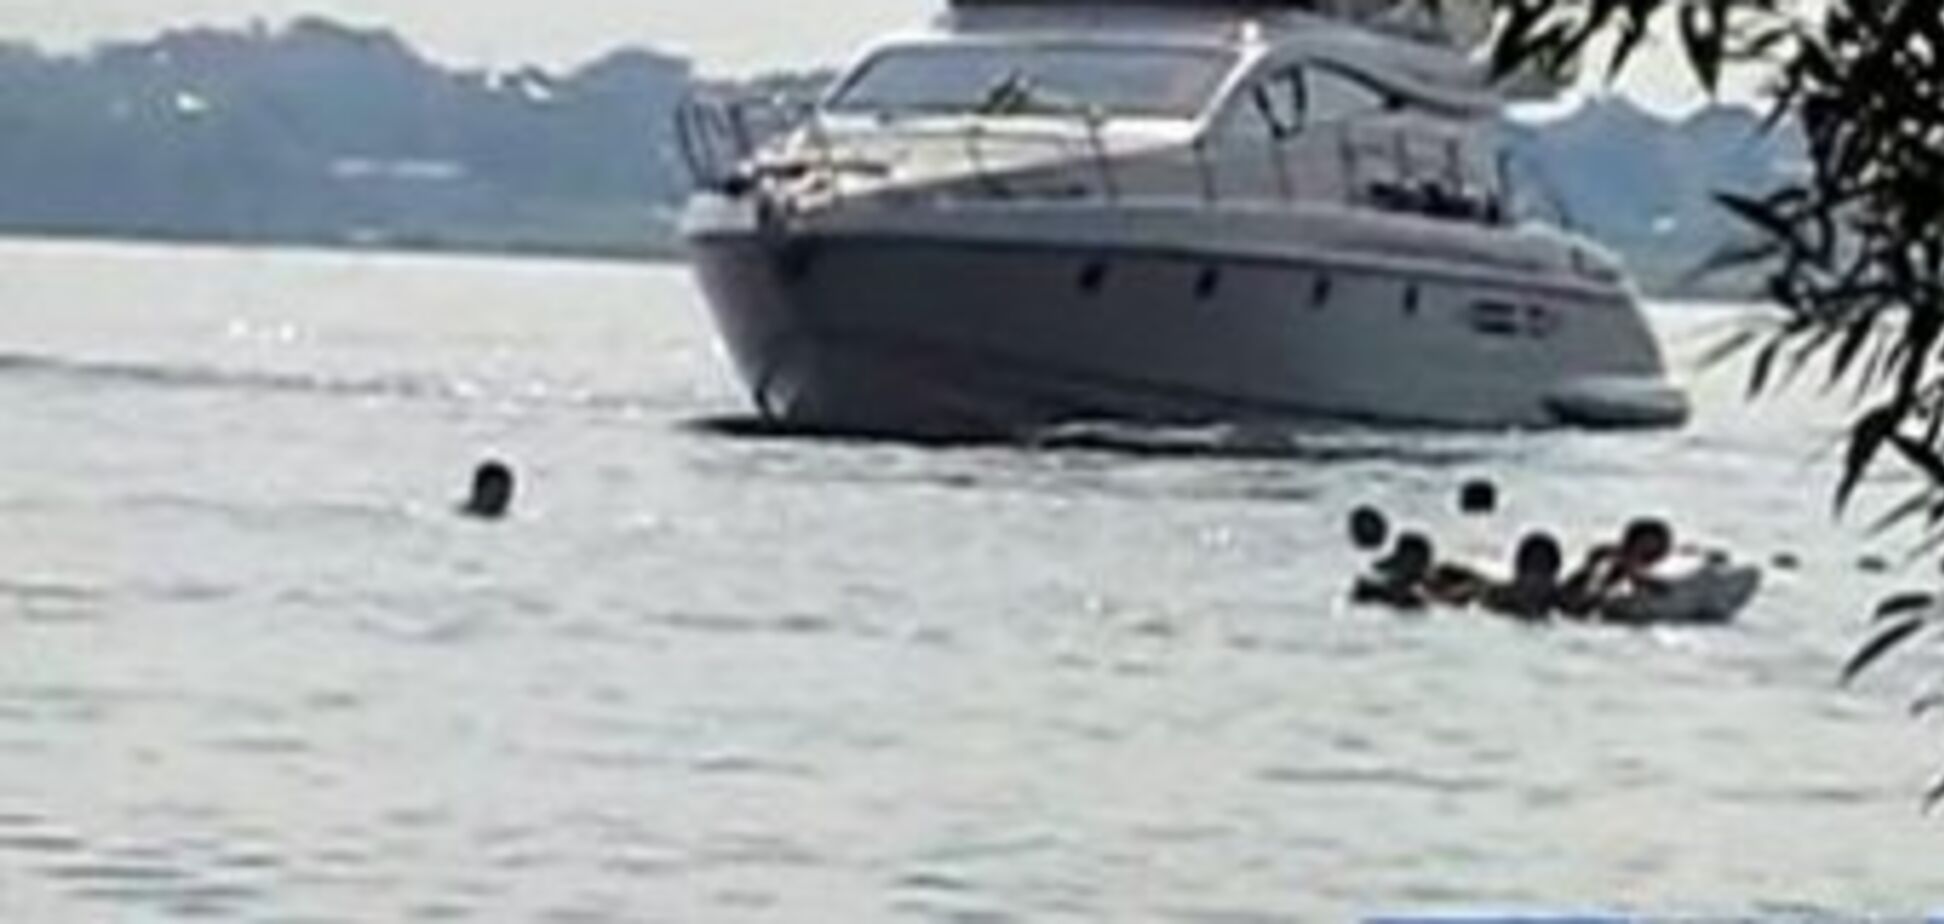 Капитан яхты, убившей женщину, хотел 'спасти людей' маневром